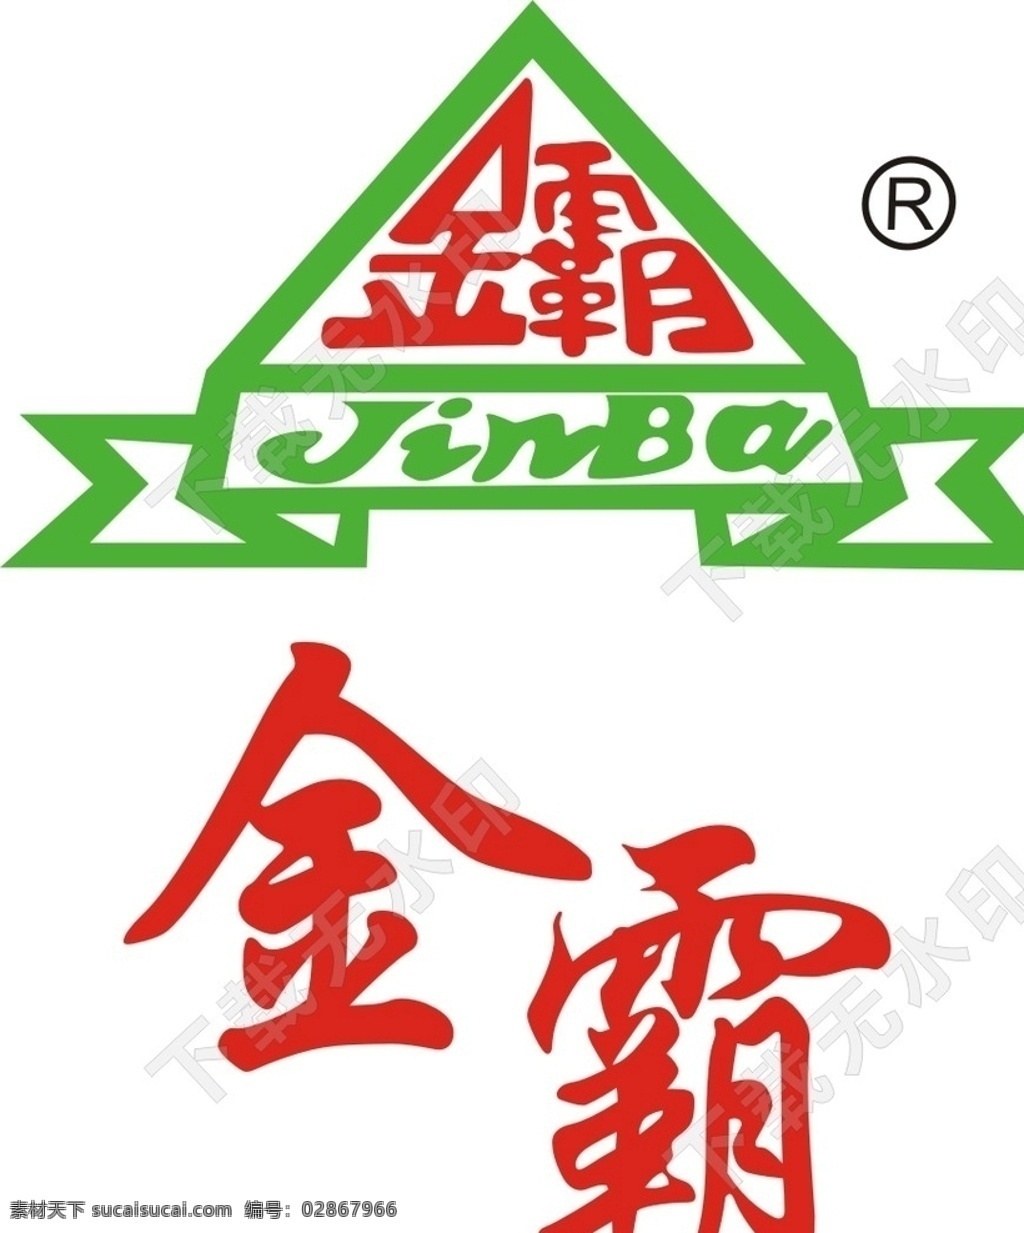 金 霸 米粉 标志 金霸米粉标志 金霸 东莞金霸 米线 logo设计